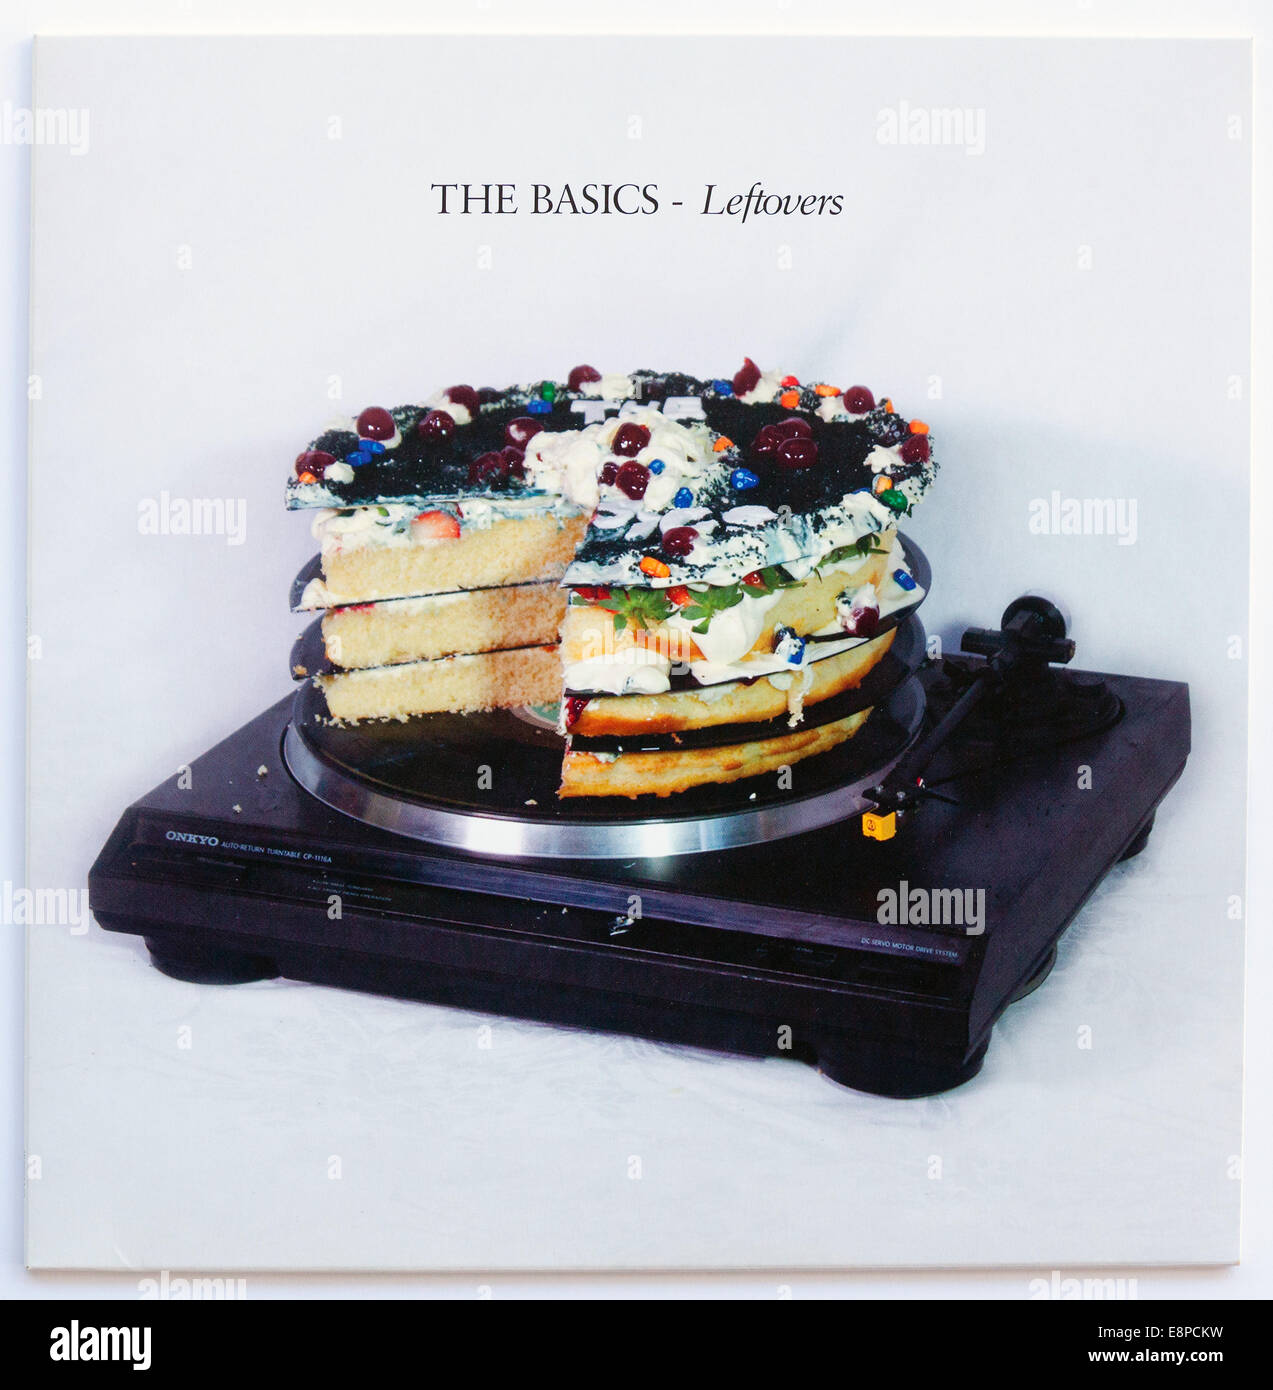 The Basics - couverture de l'album vinyle de 2013 - Editorial à utiliser uniquement Banque D'Images